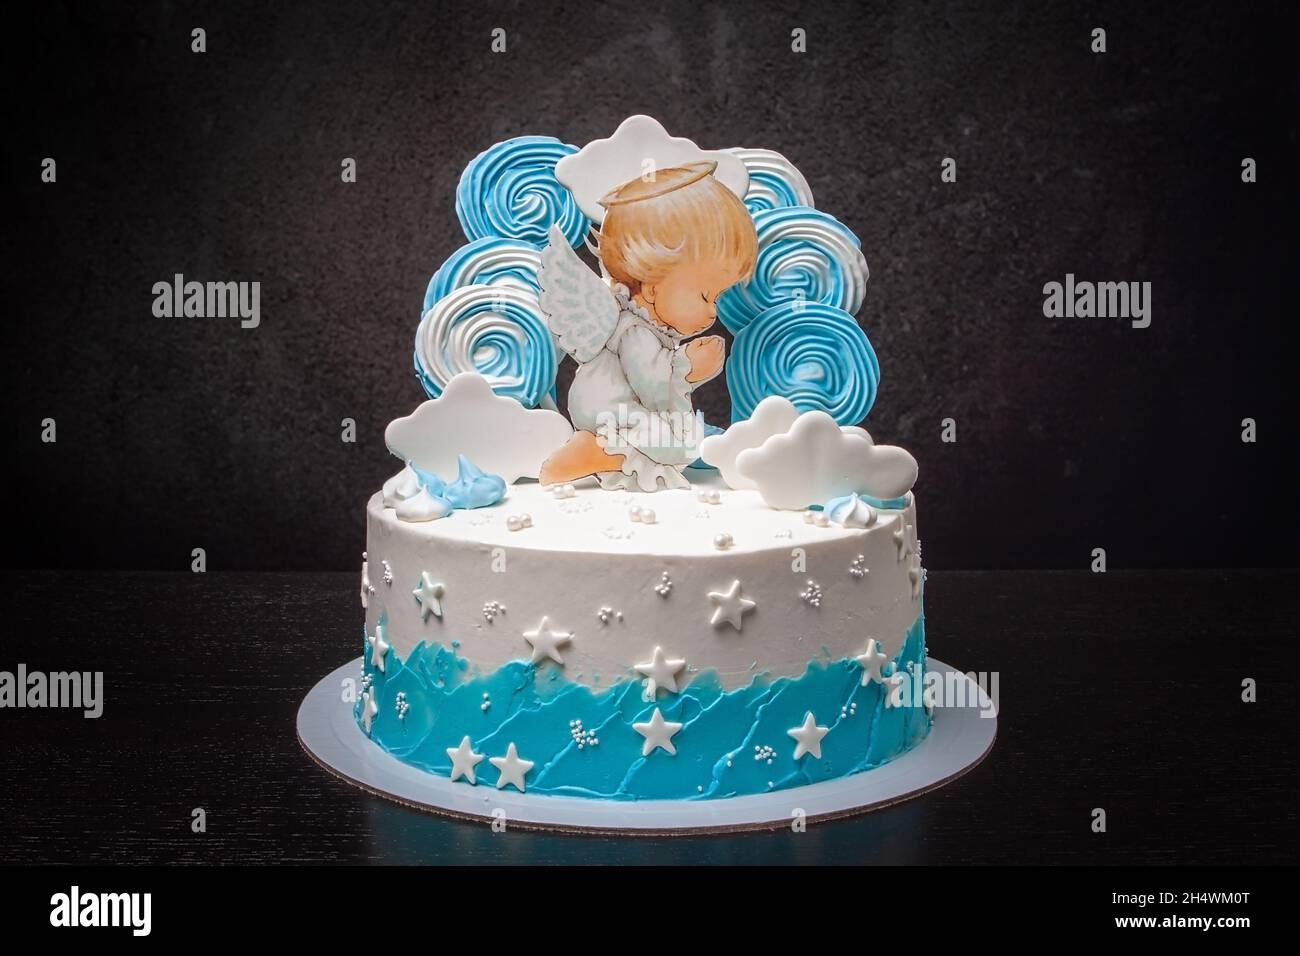 Gros plan d'un gâteau à thème avec un ange et des nuages blancs, pour le baptême d'un bébé.Baptême d'un nouveau-né Banque D'Images